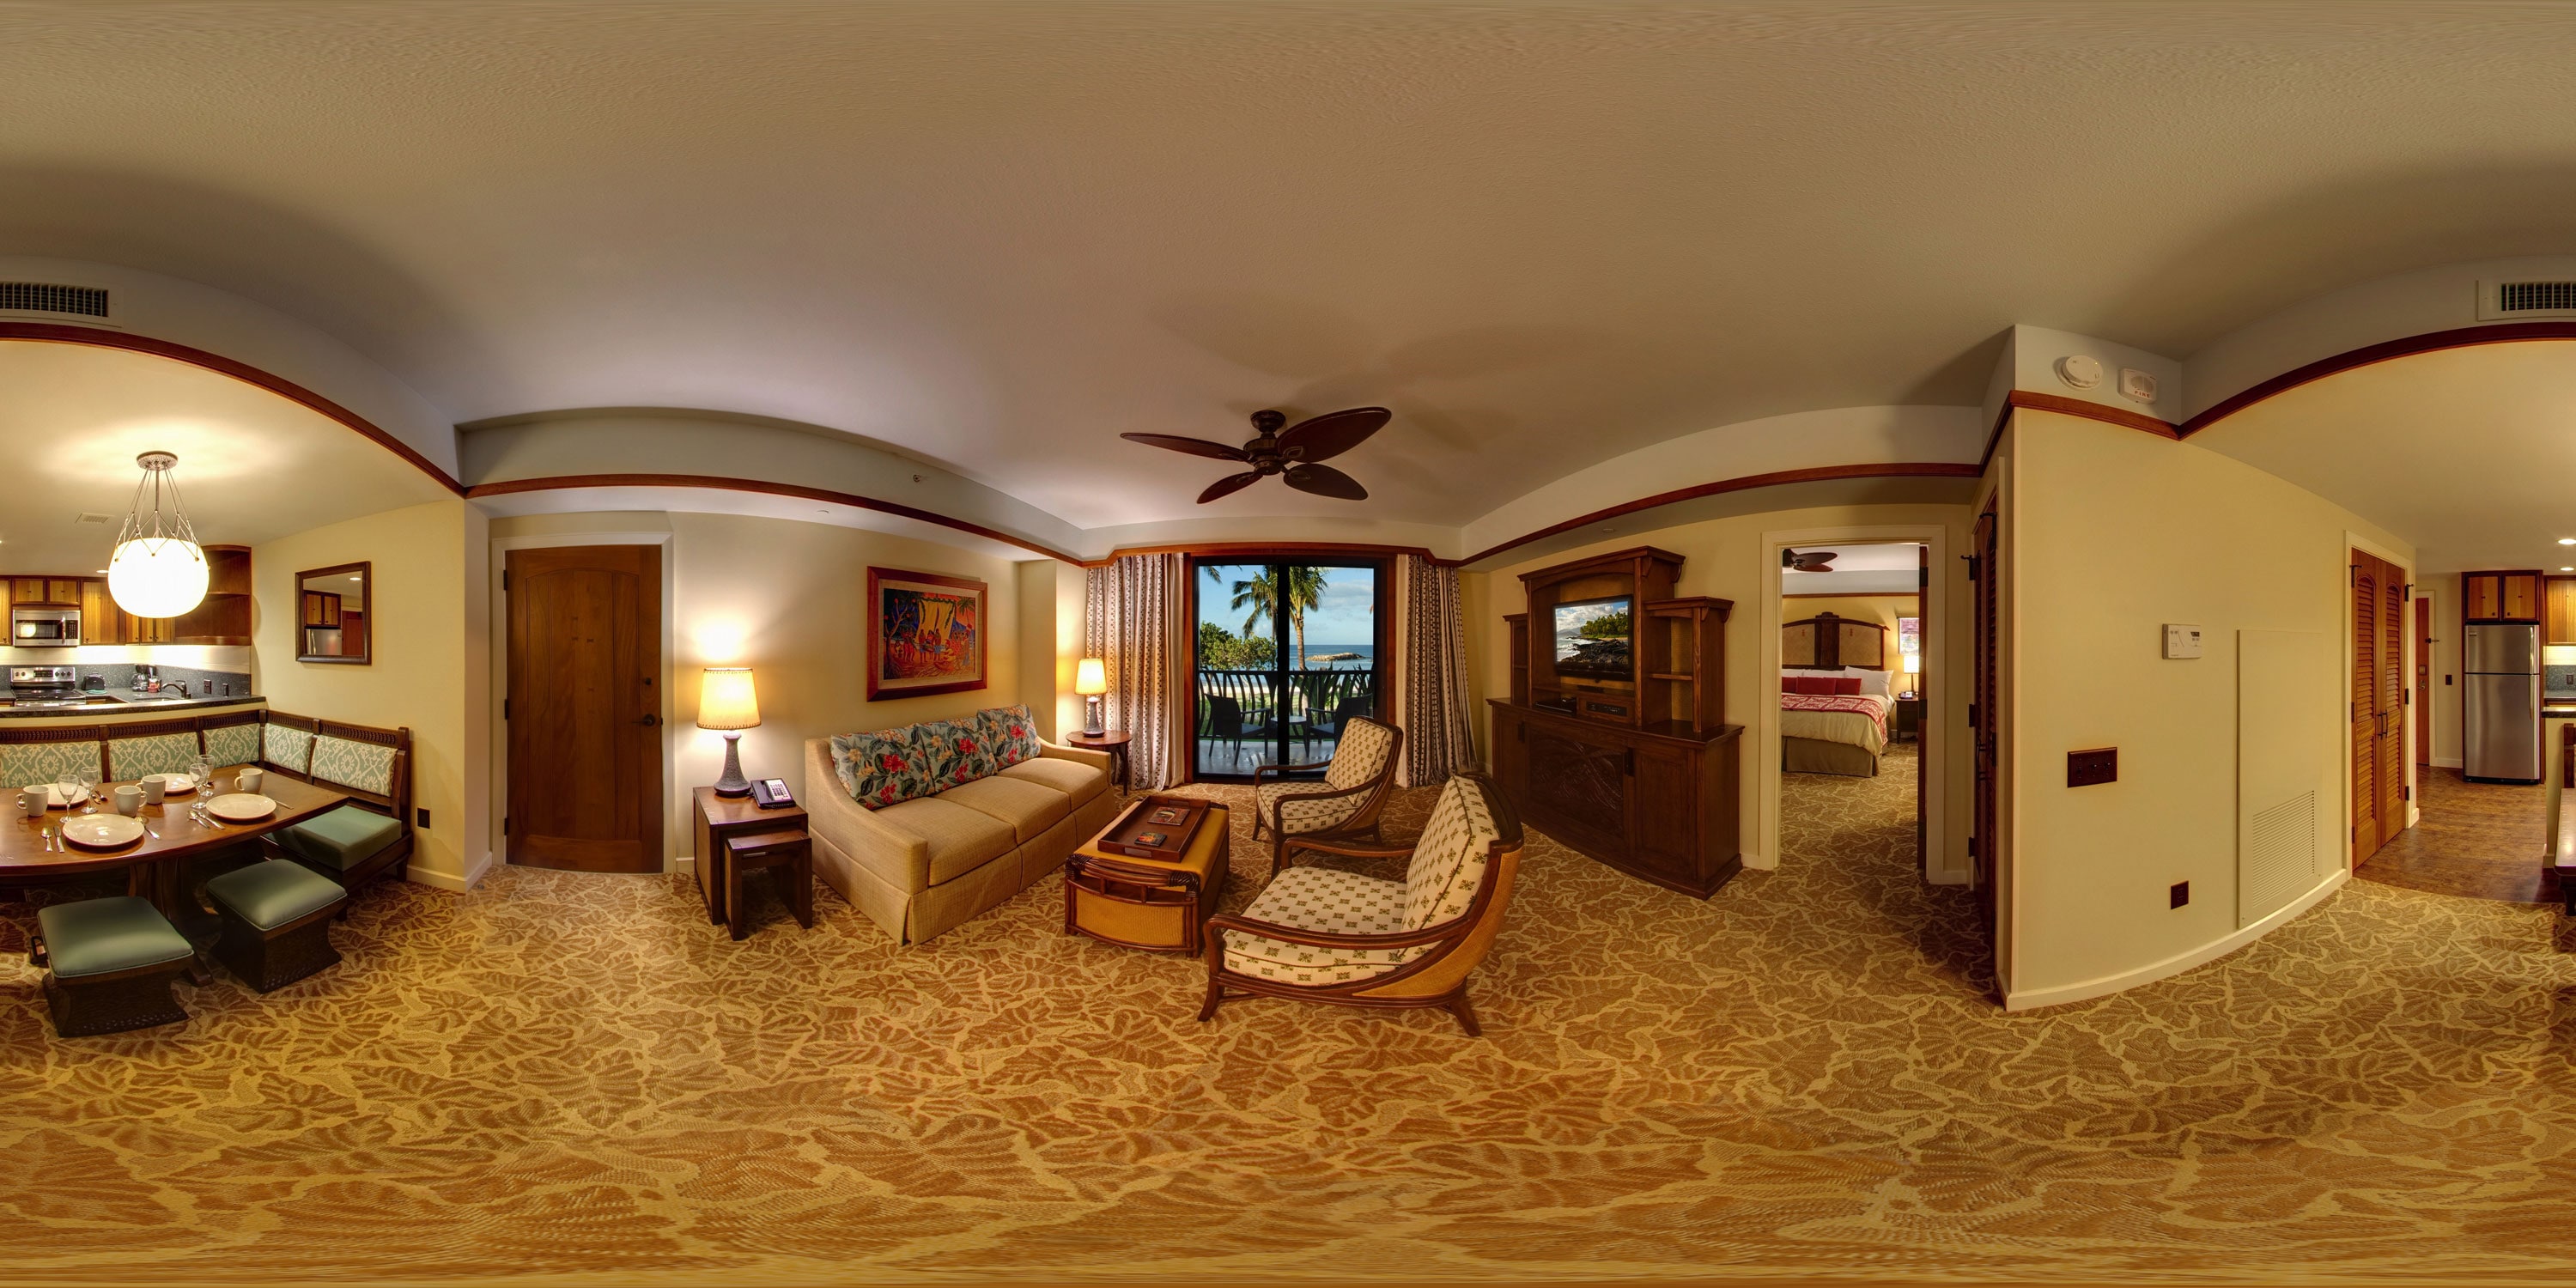 2 Bedroom Villas Aulani Hawaii Resort Spa